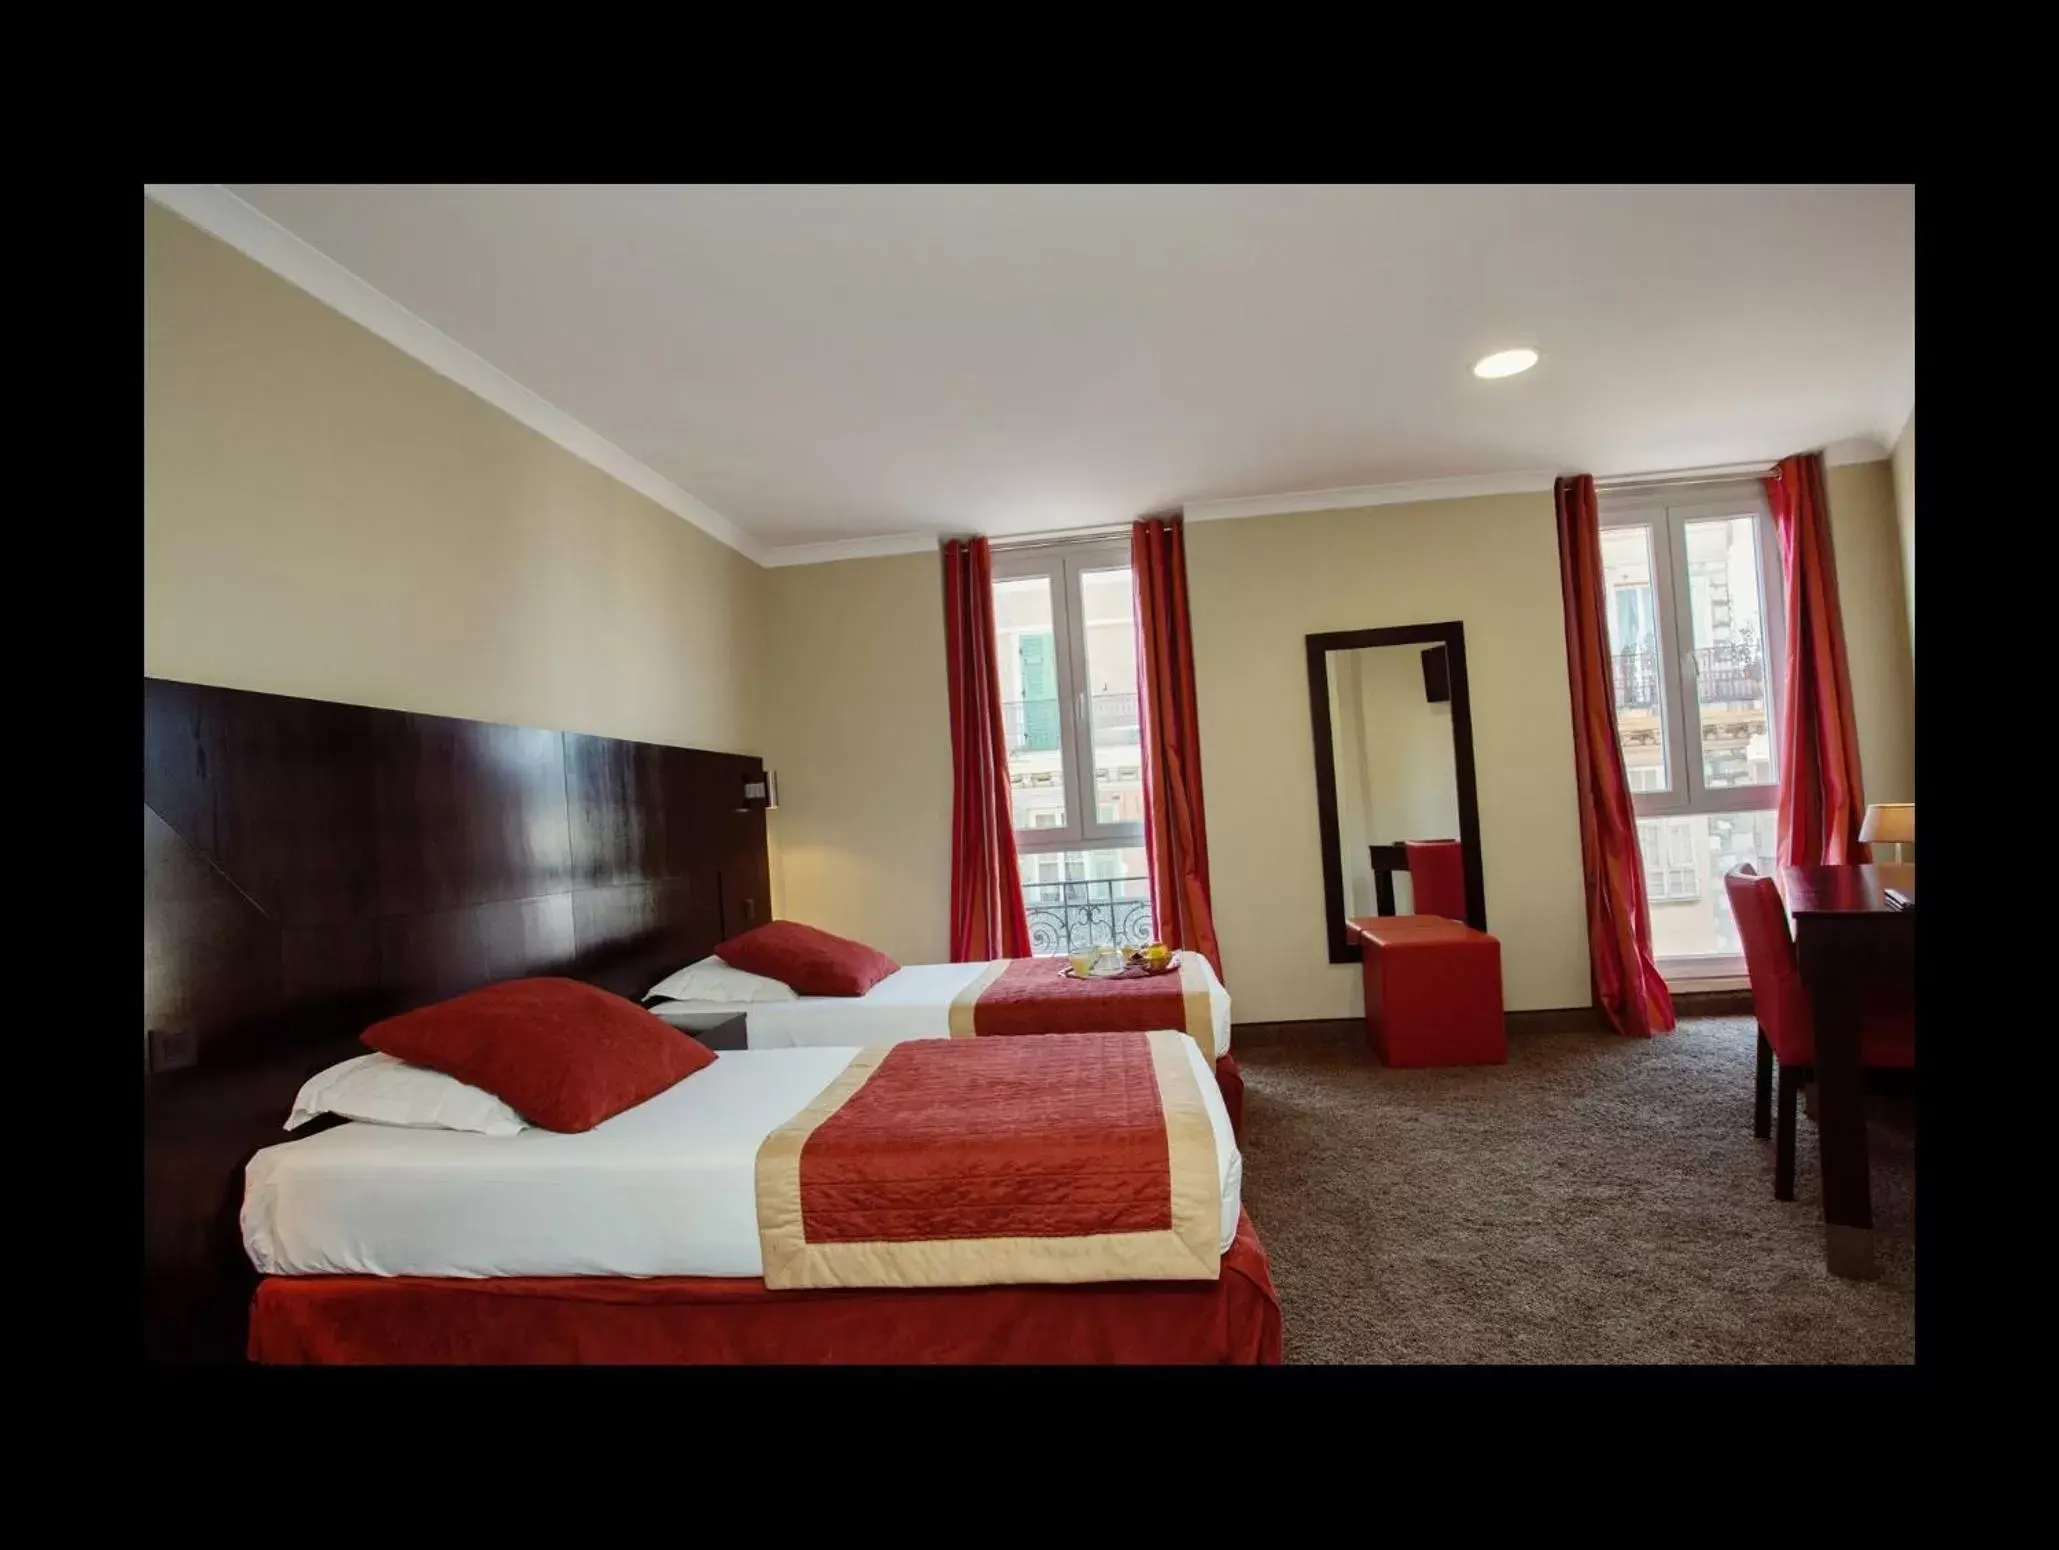 Bedroom in Hotel De Suède